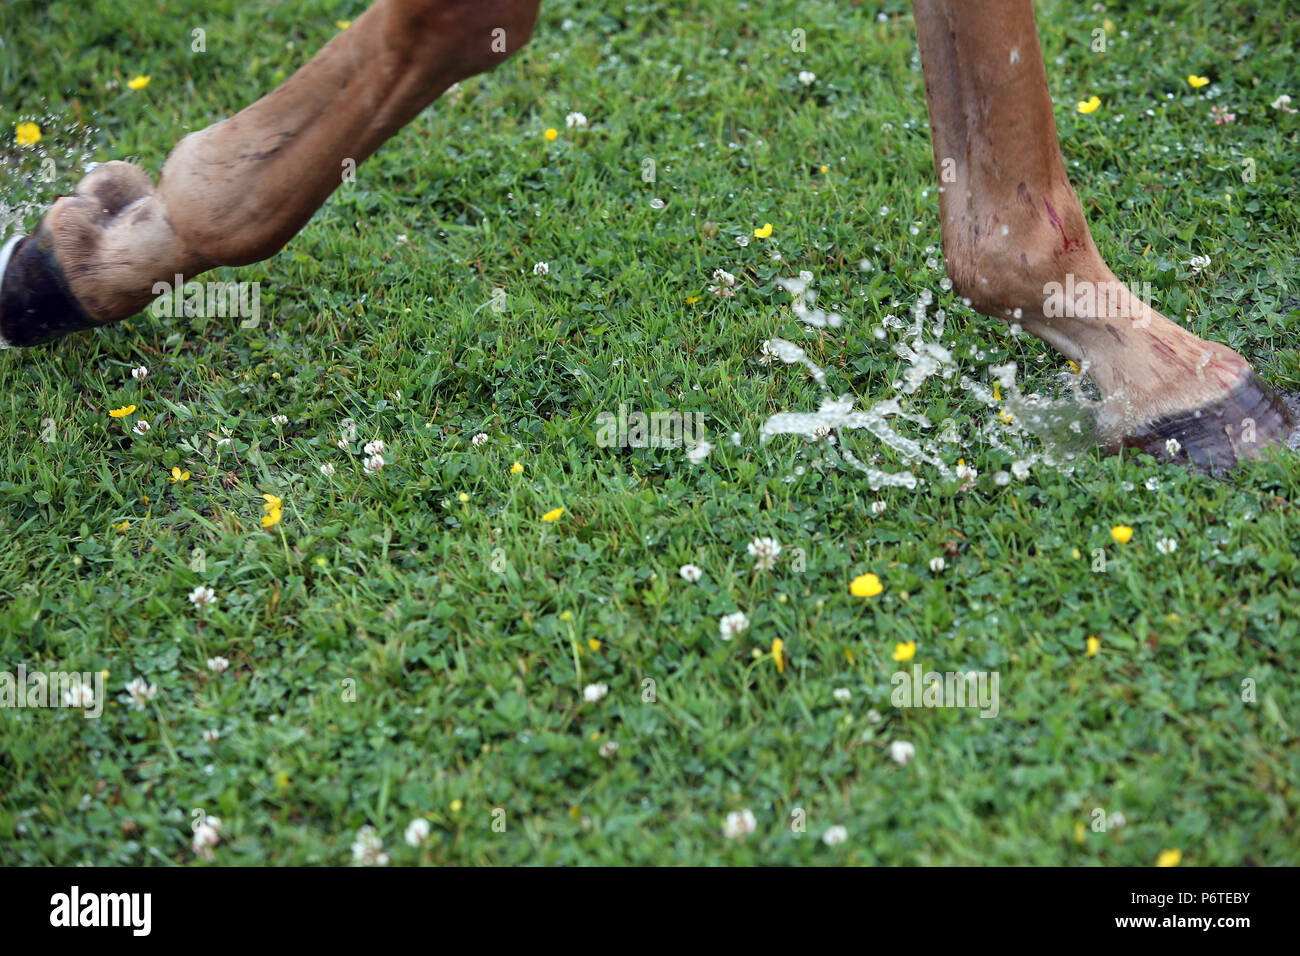 Hamburg, horse legs on wet grass Stock Photo